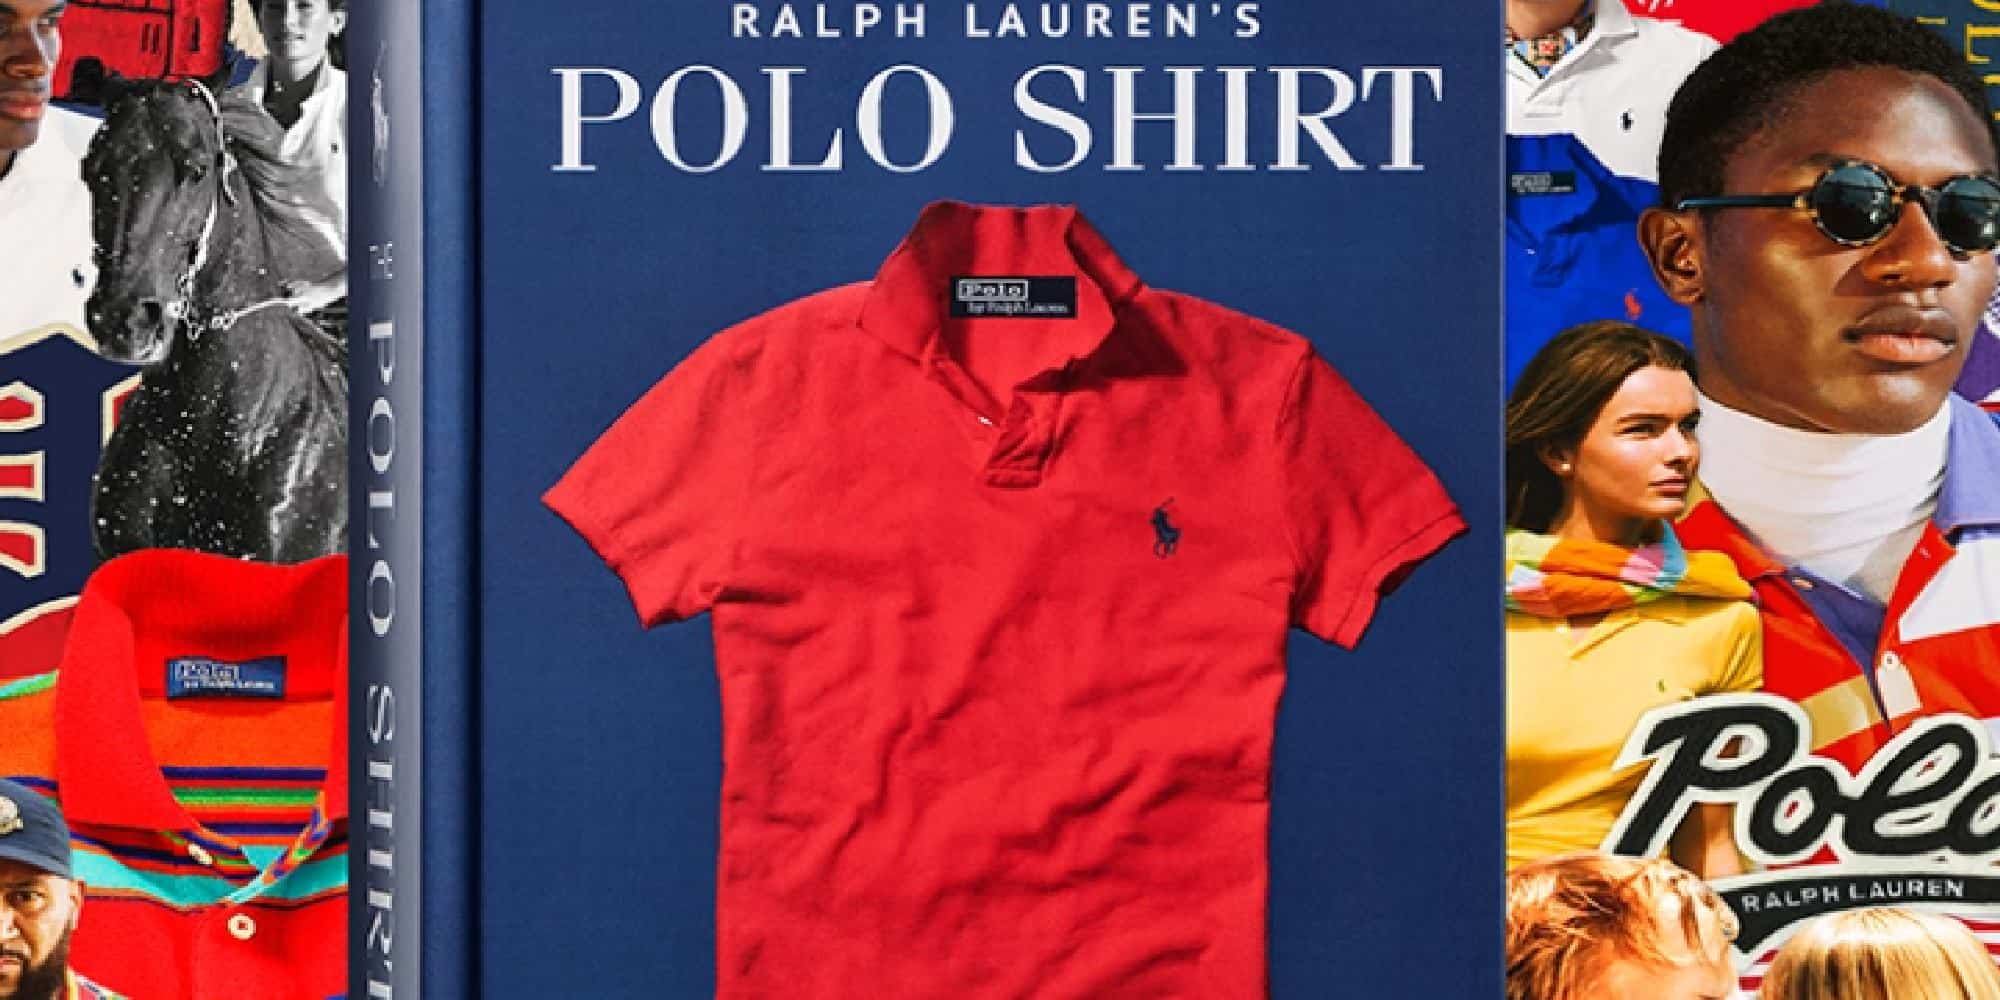 Βιβλίο του Ralph Lauren για το polo shirt